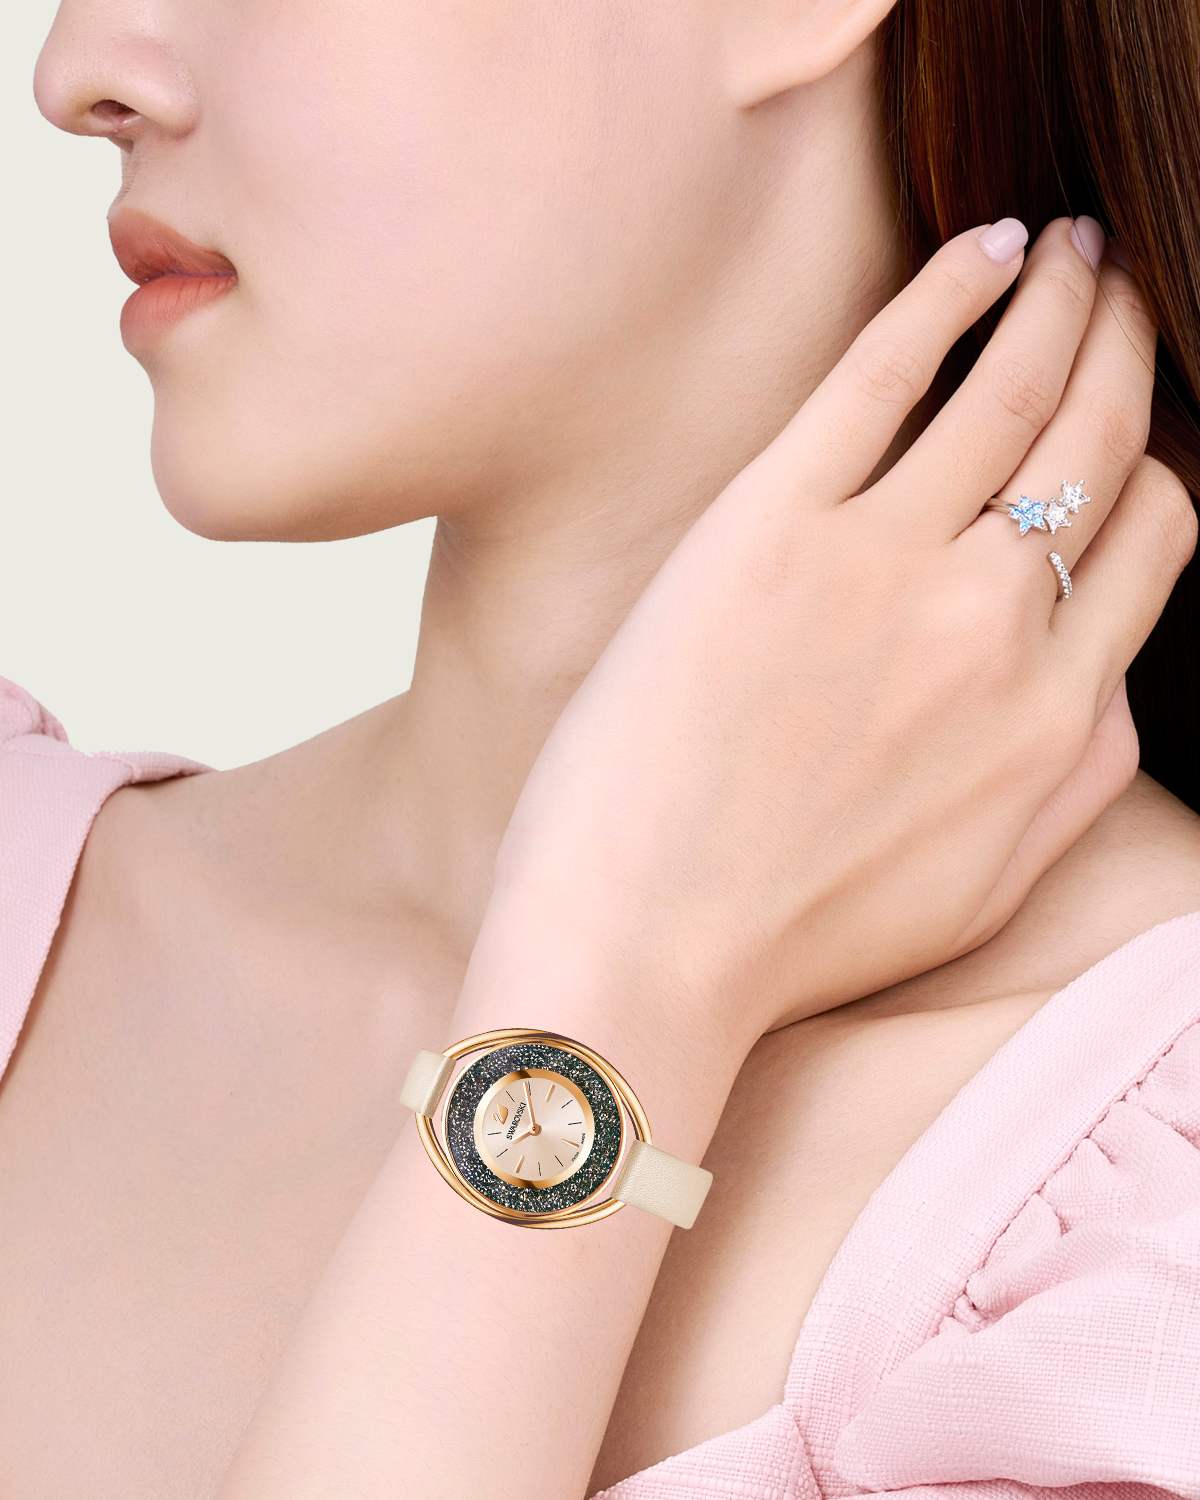 Store Việt Nam - Địa chỉ uy tín chuyên cung cấp đồng hồ Swarovski chính hãng.